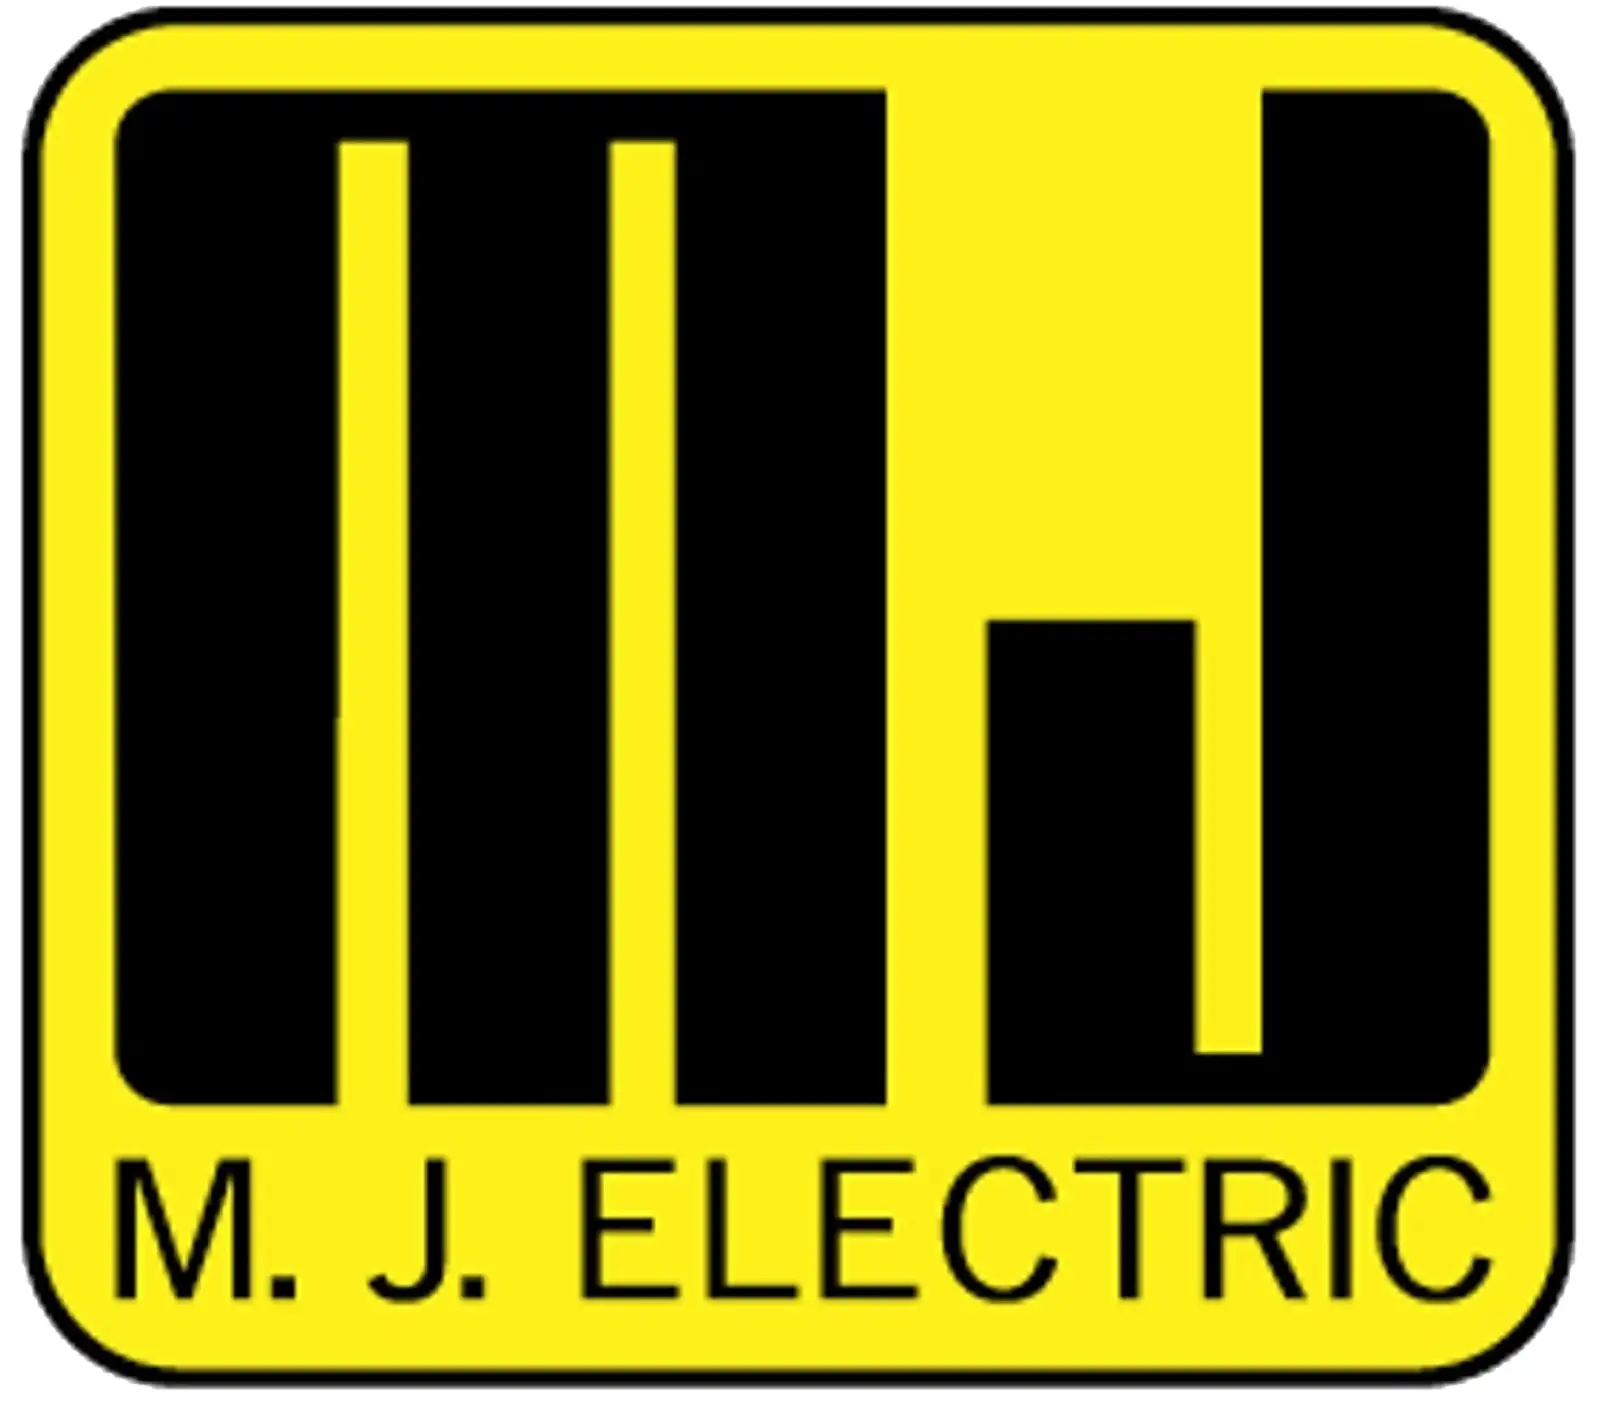 M.J. Electric  logo